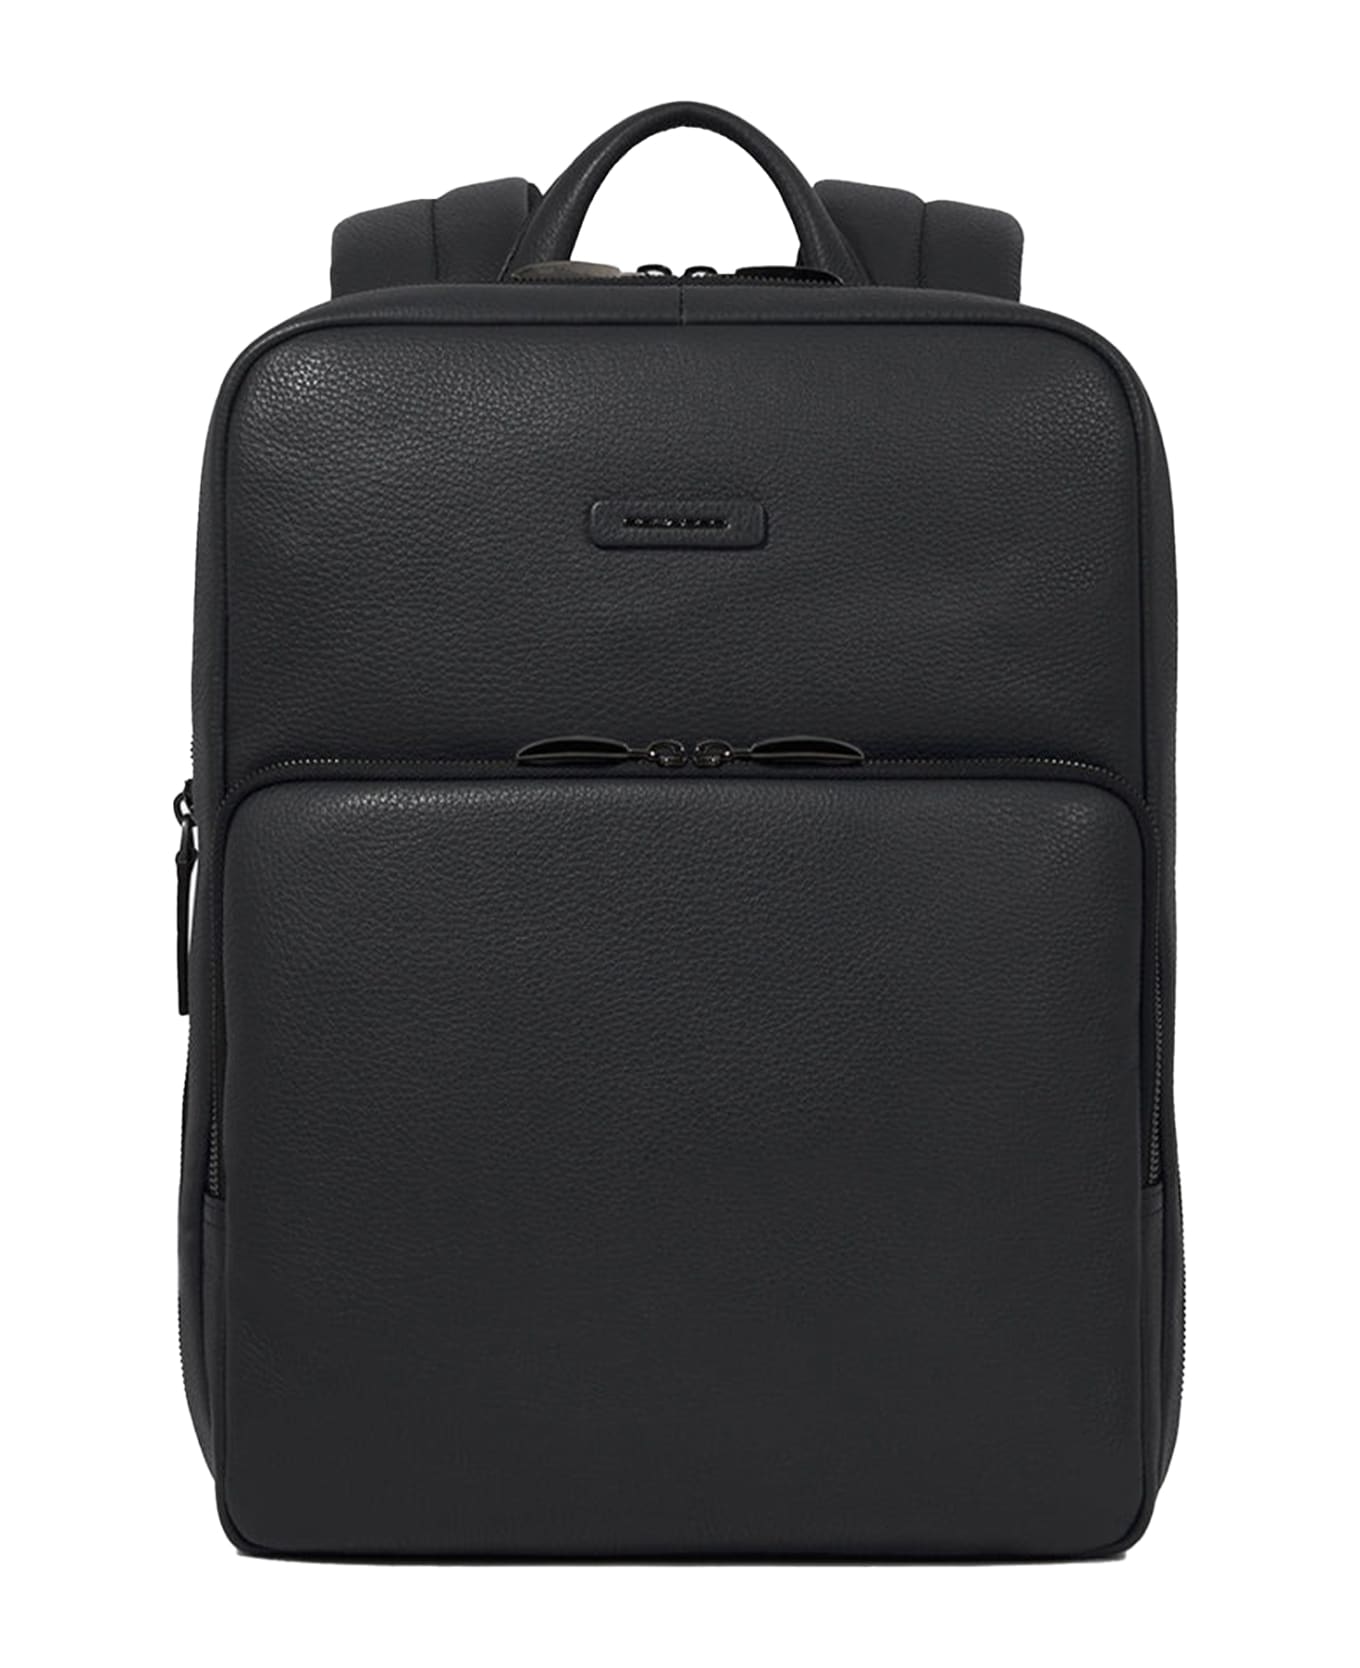 Piquadro Slim 14" Laptop Backpack - NERO バックパック